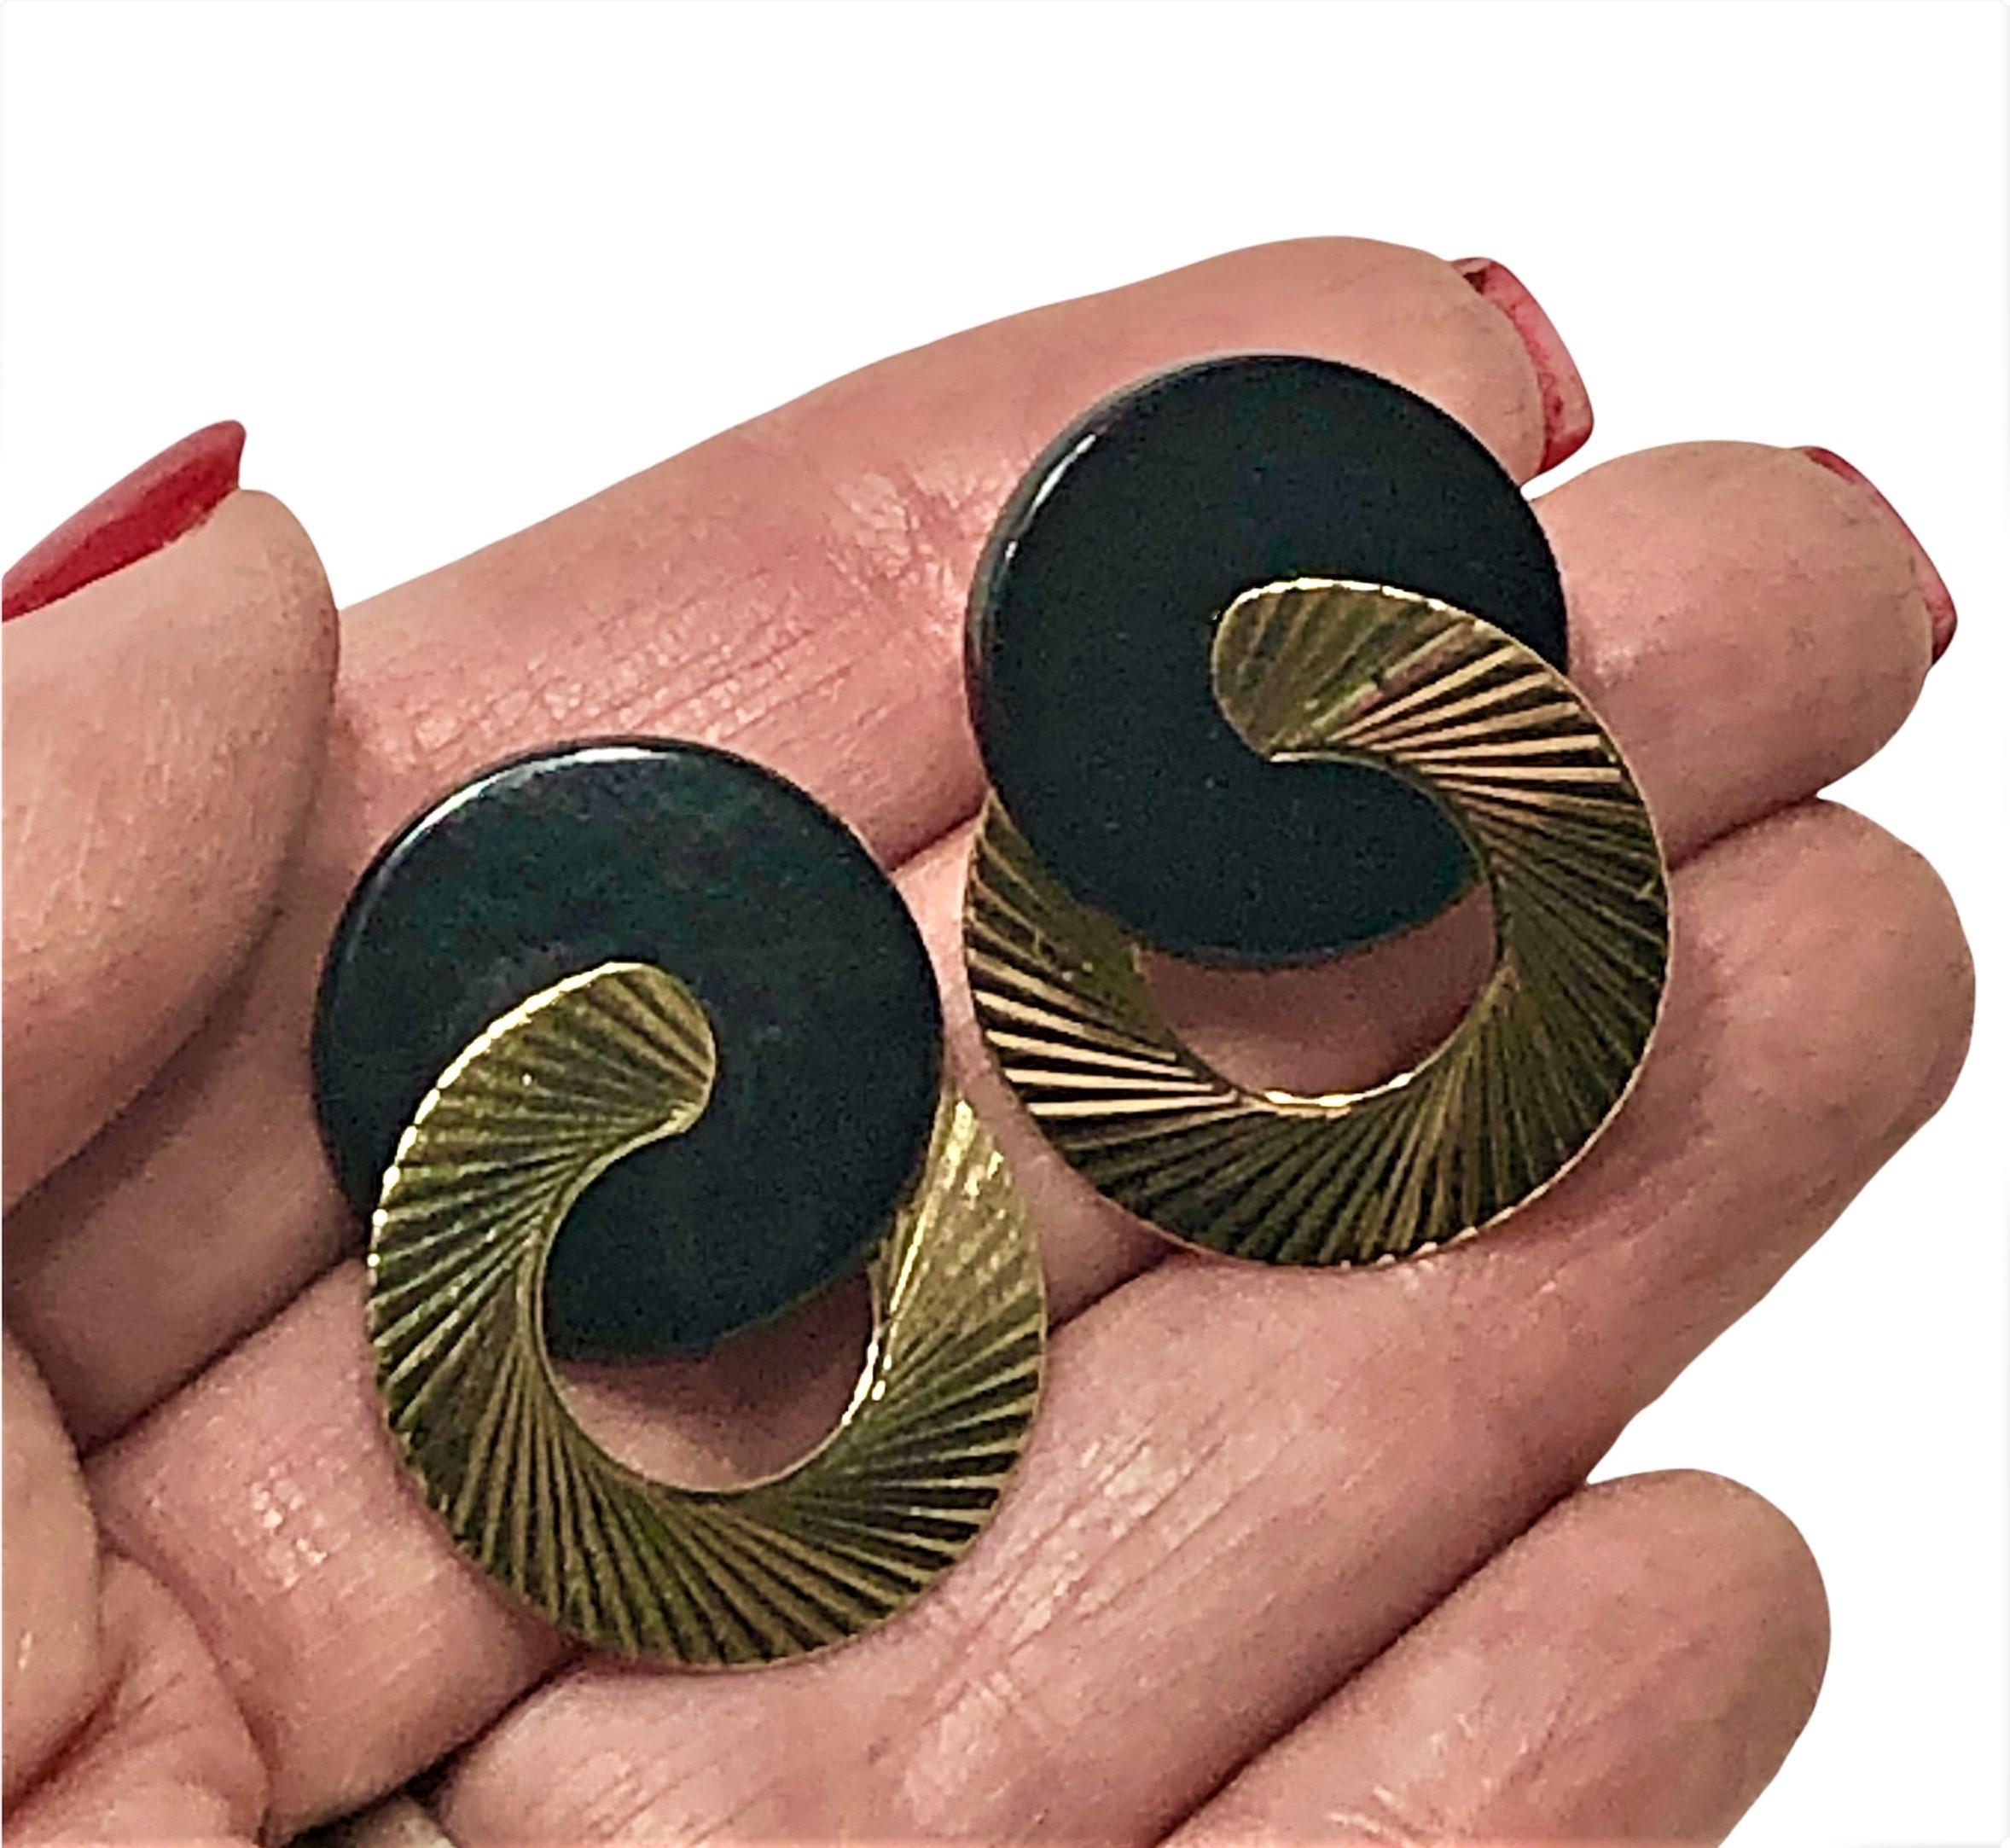 Cette superbe paire de boucles d'oreilles modernistes est composée de disques d'onyx imbriqués et de disques d'or jaune 14K cannelés qui brillent à la lumière. Chaque disque en onyx mesure 3/4 de pouce de diamètre et chaque disque en or cannelé